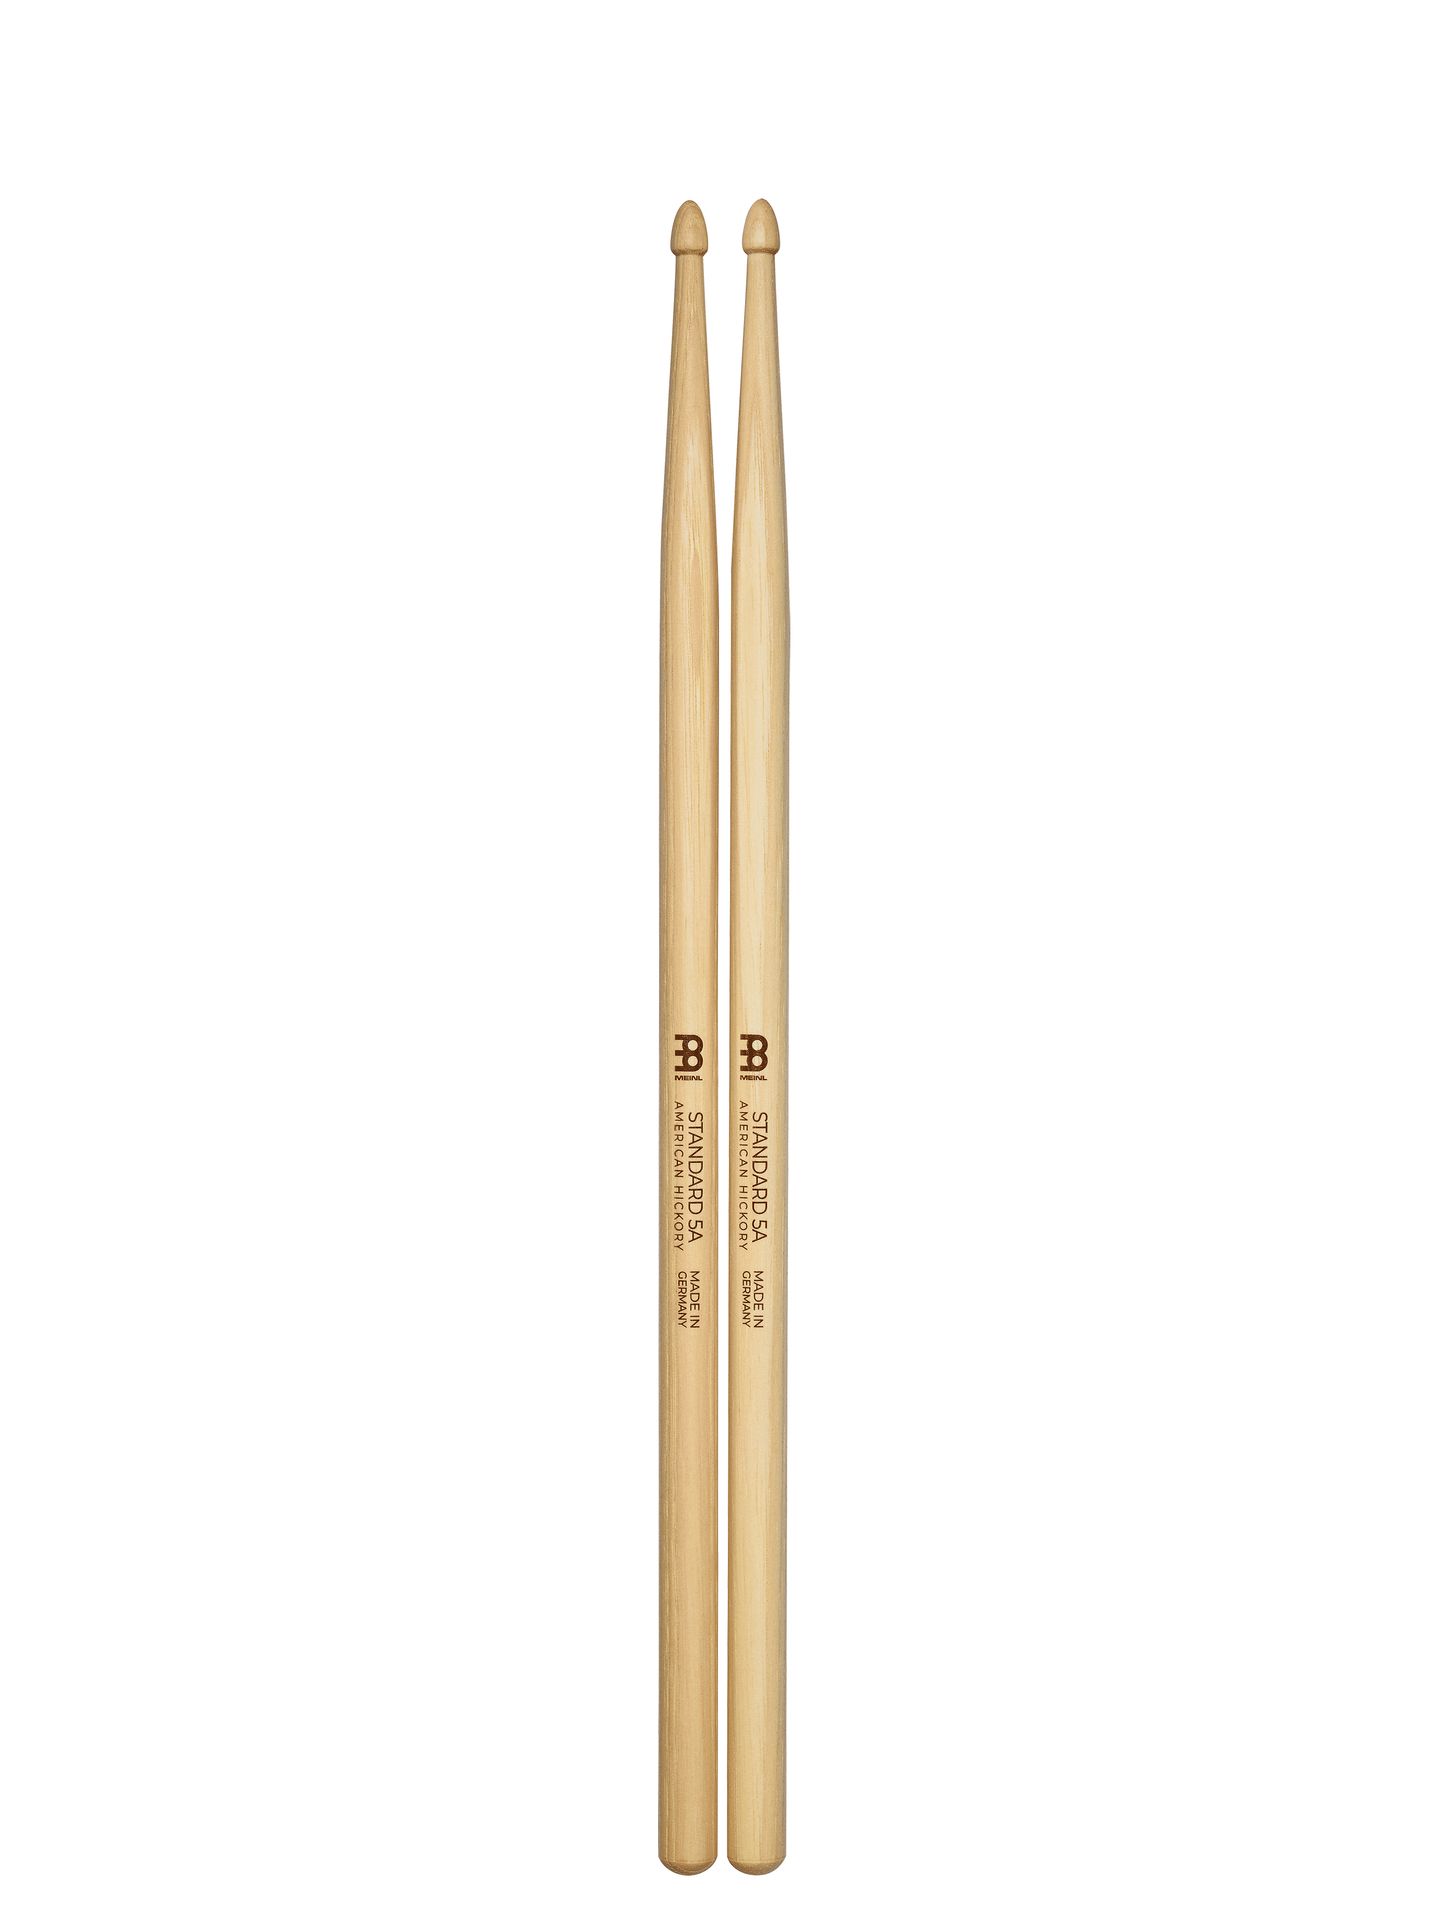 Meinl 5A Standard Drumsticks Hickory